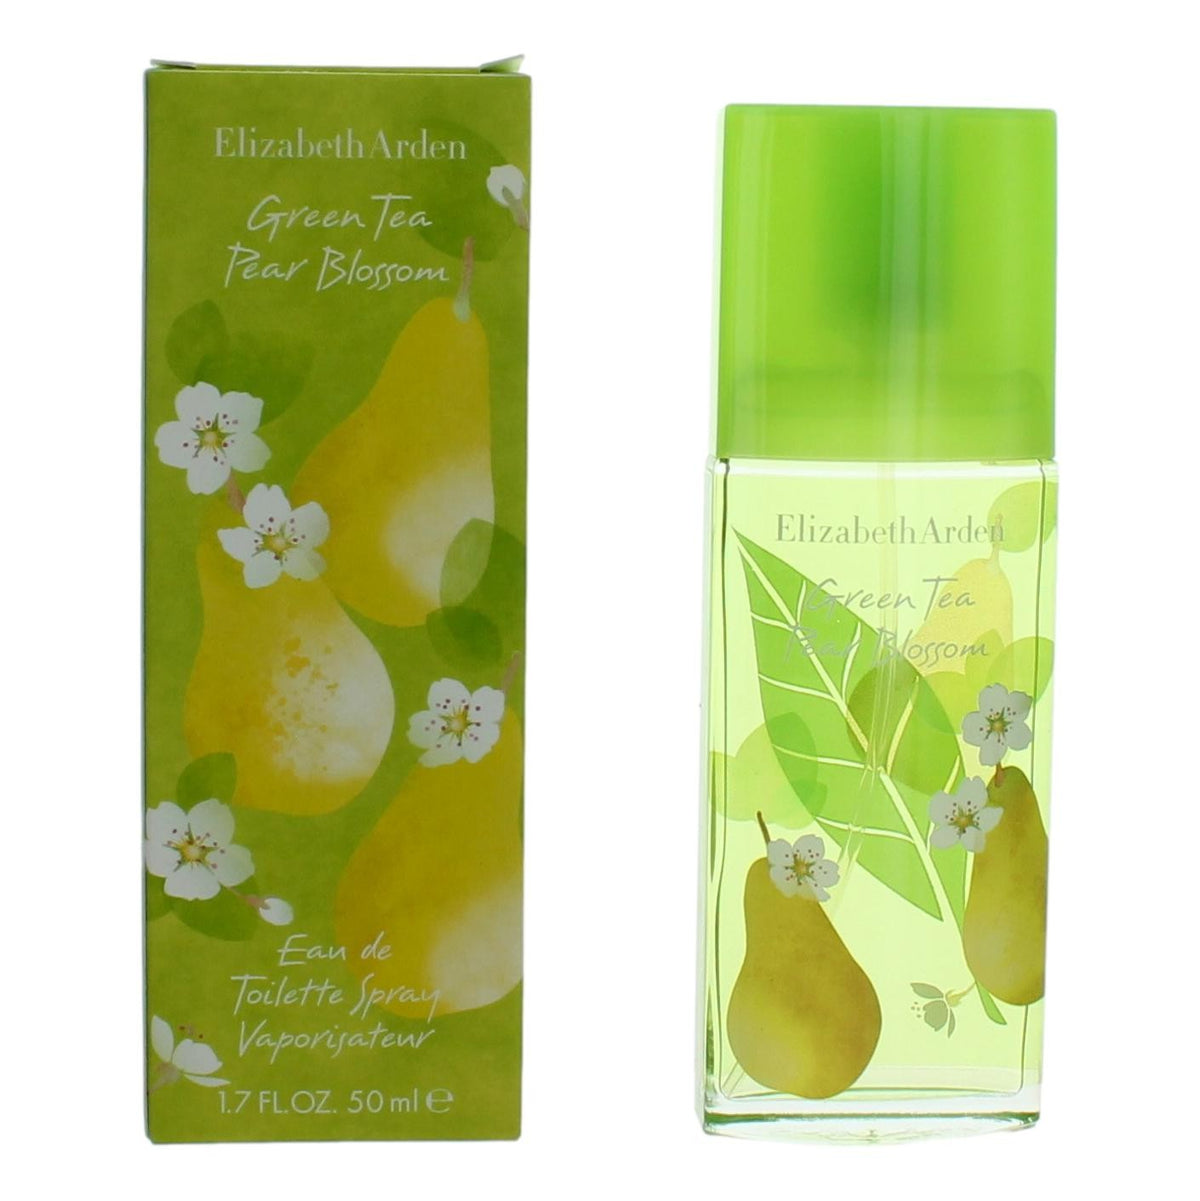 Green Tea Pear Blossom by Elizabeth Arden, 1.7 oz Eau De Toilette Spray for Women